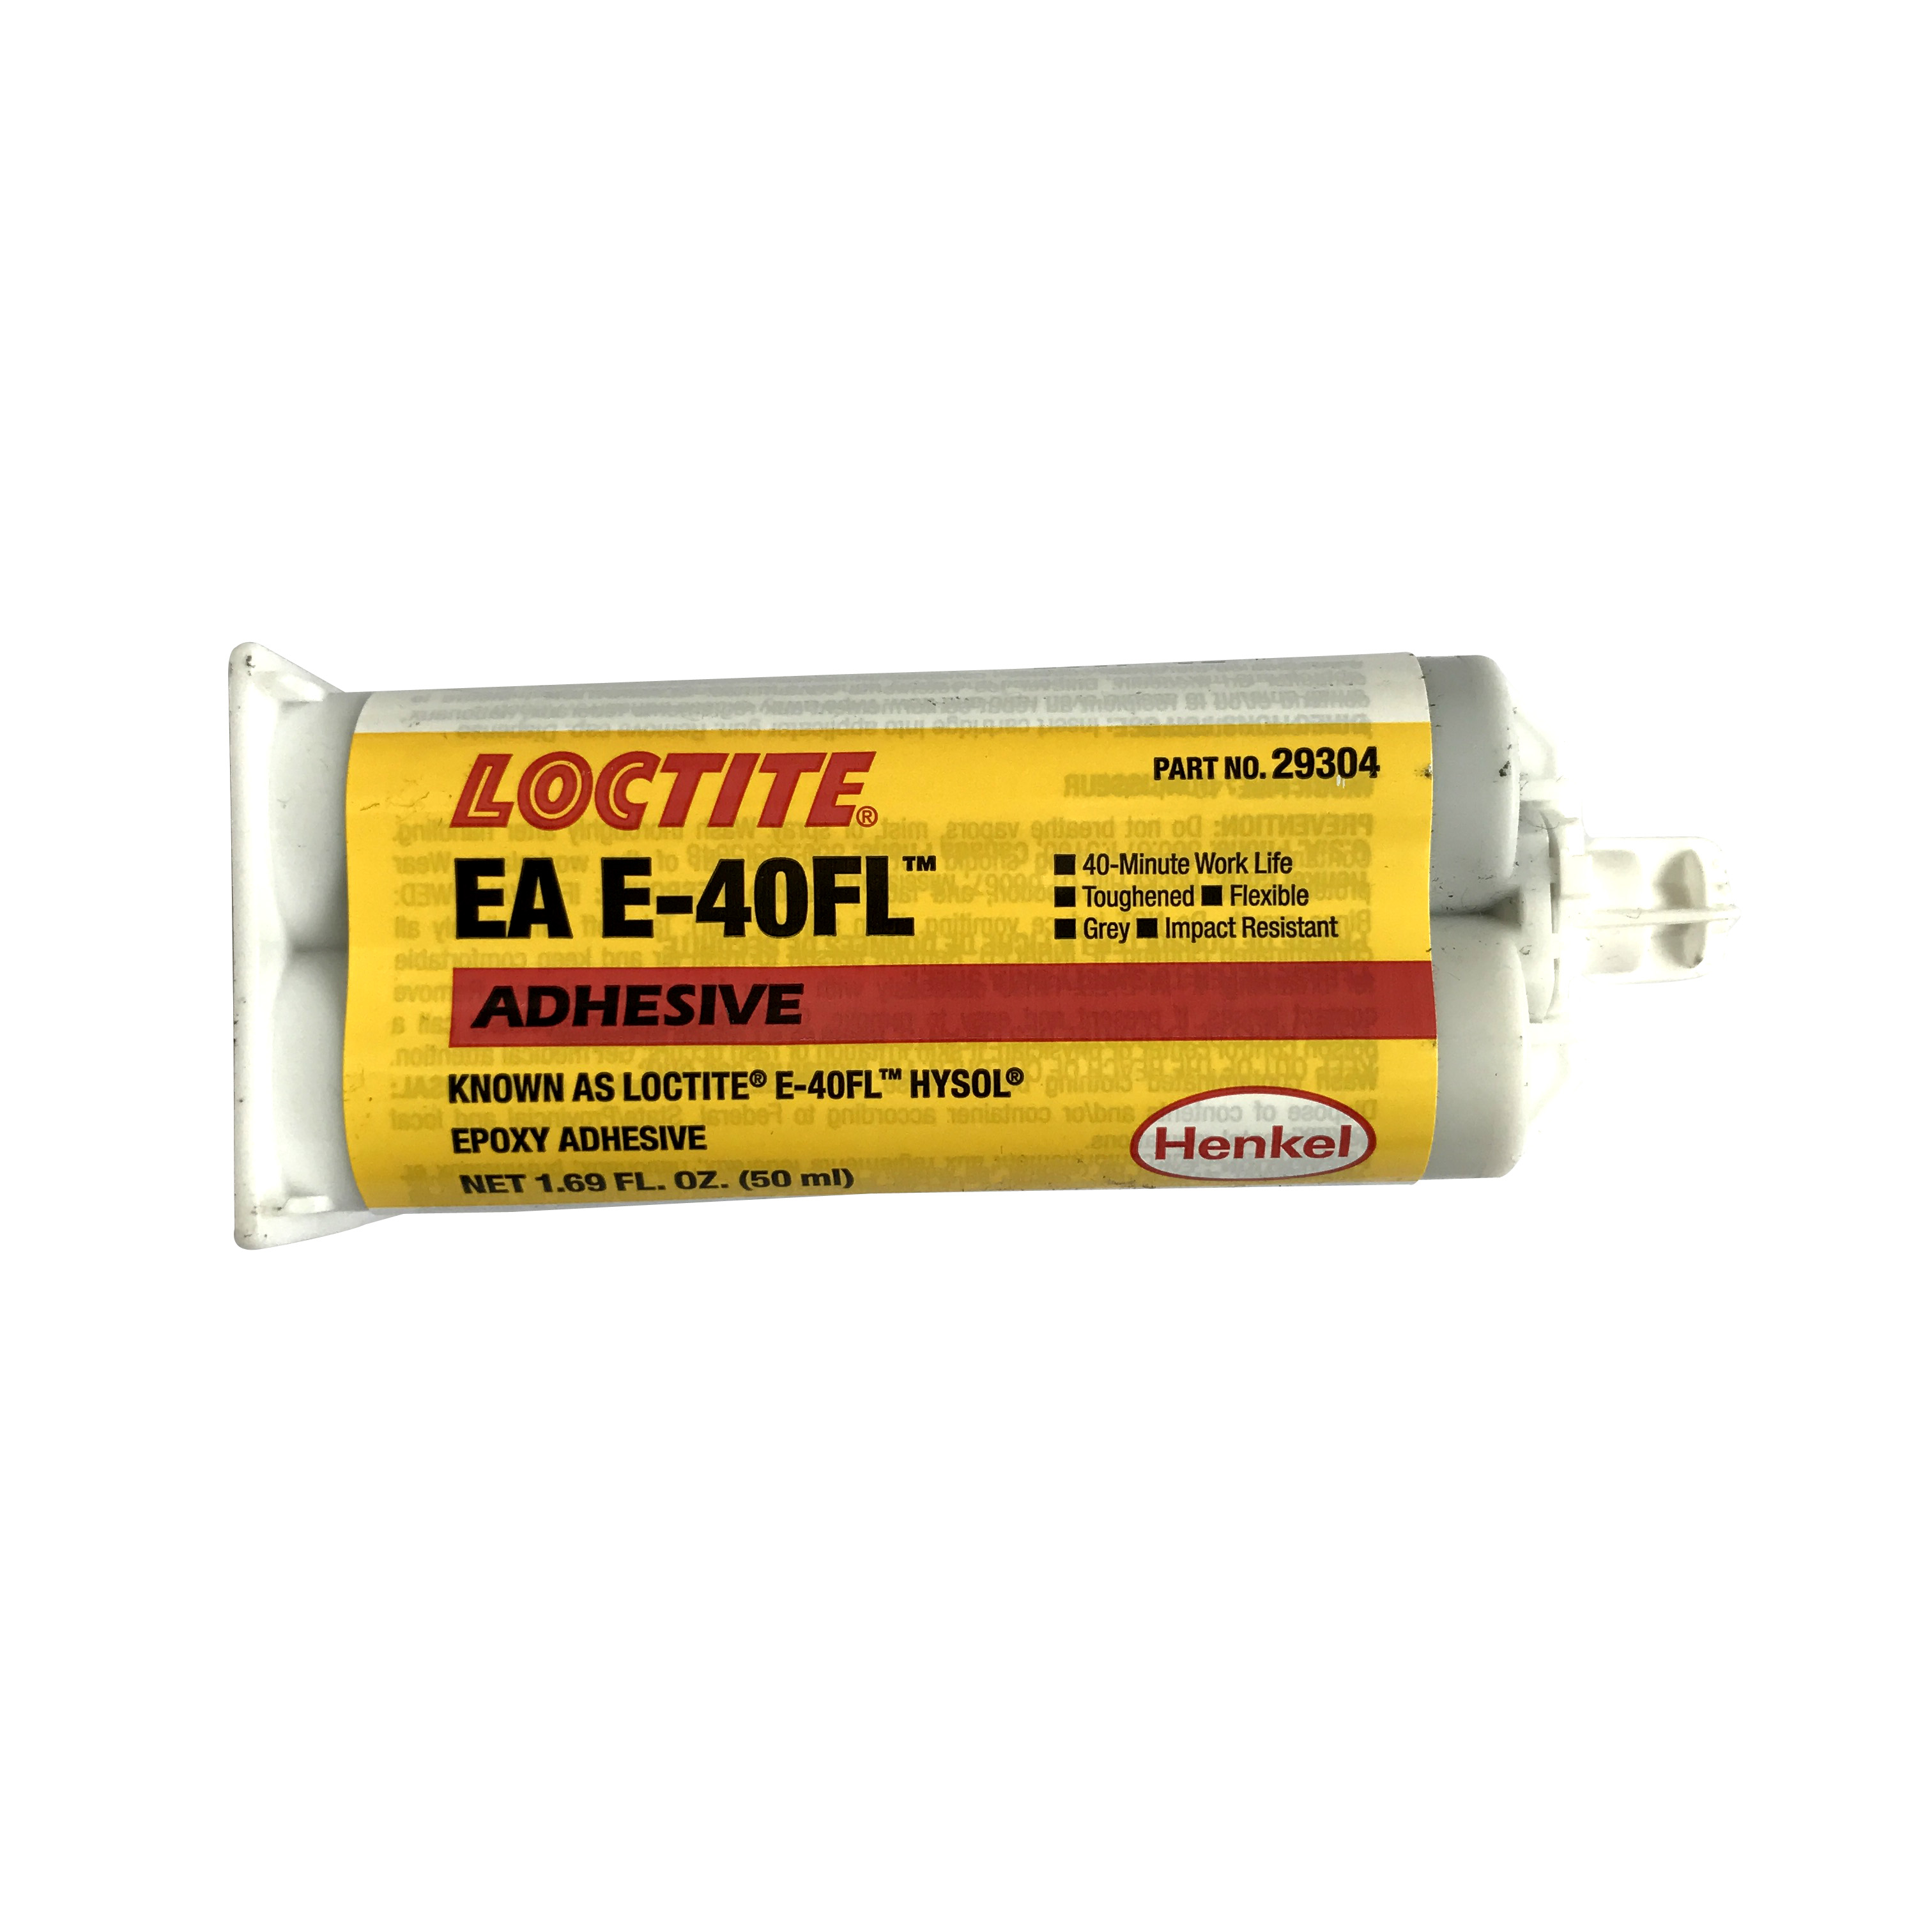 LOCTITE E-40FL環氧樹脂膠粘劑